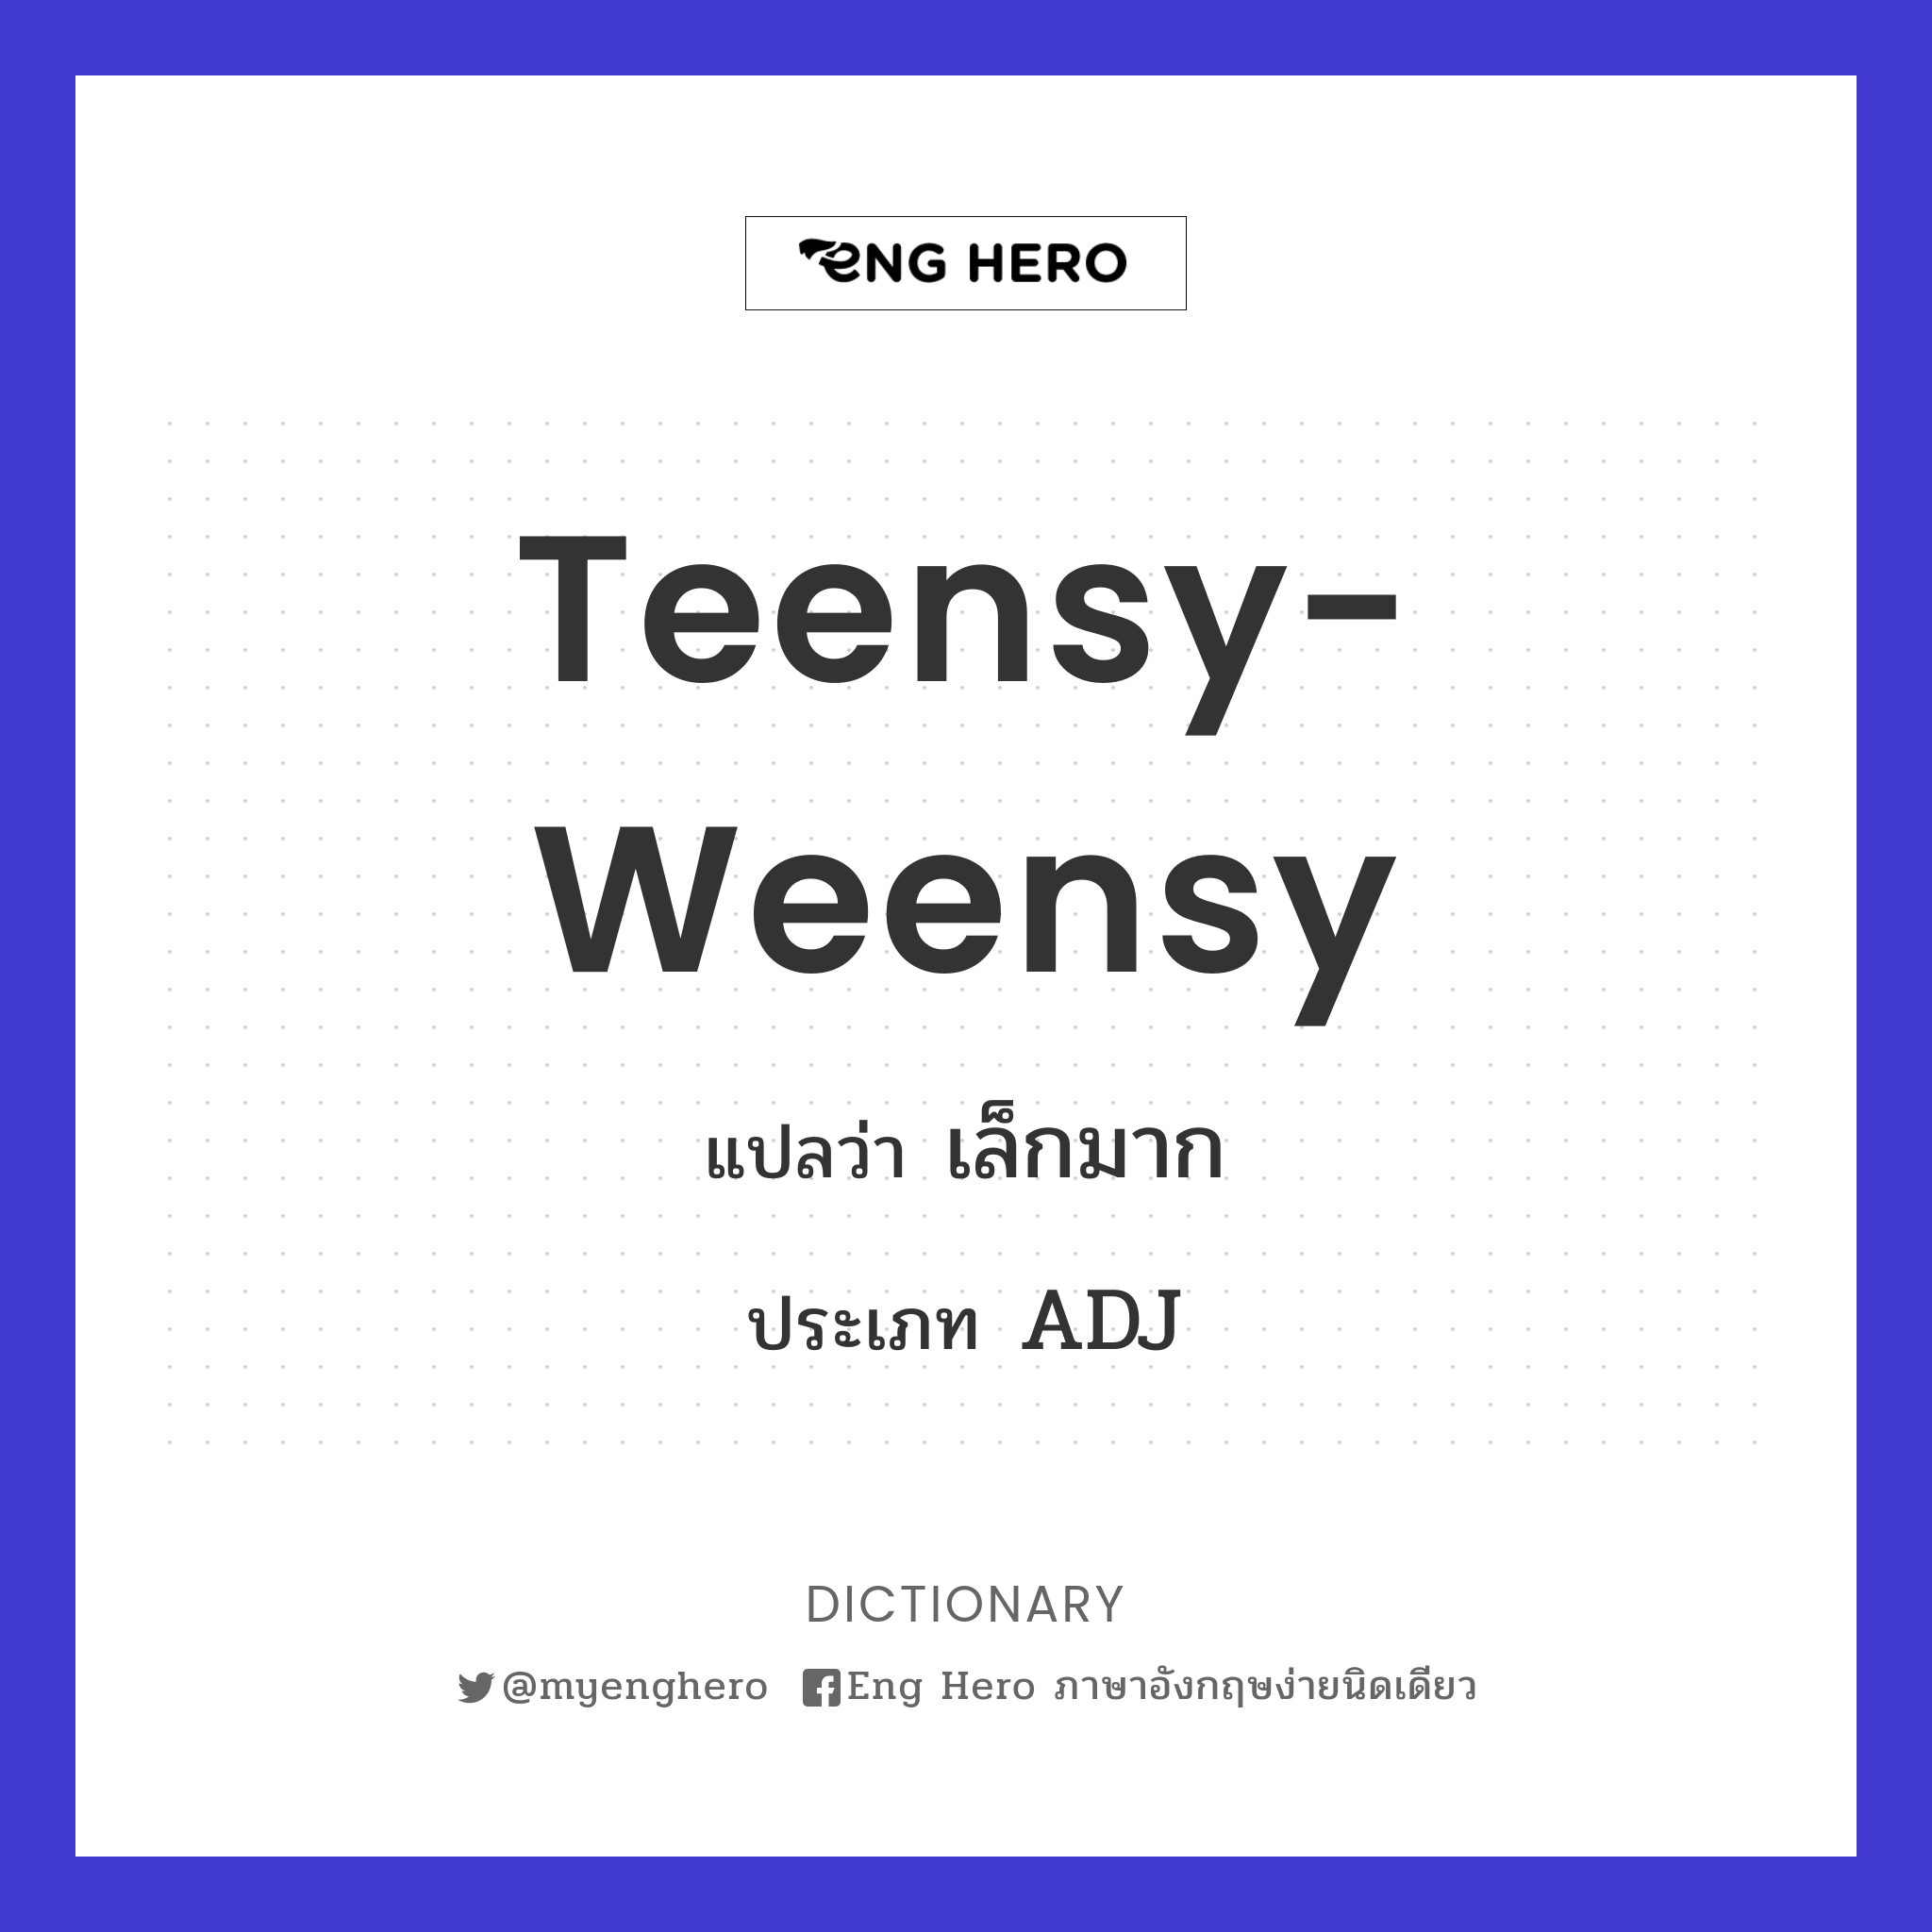 teensy-weensy